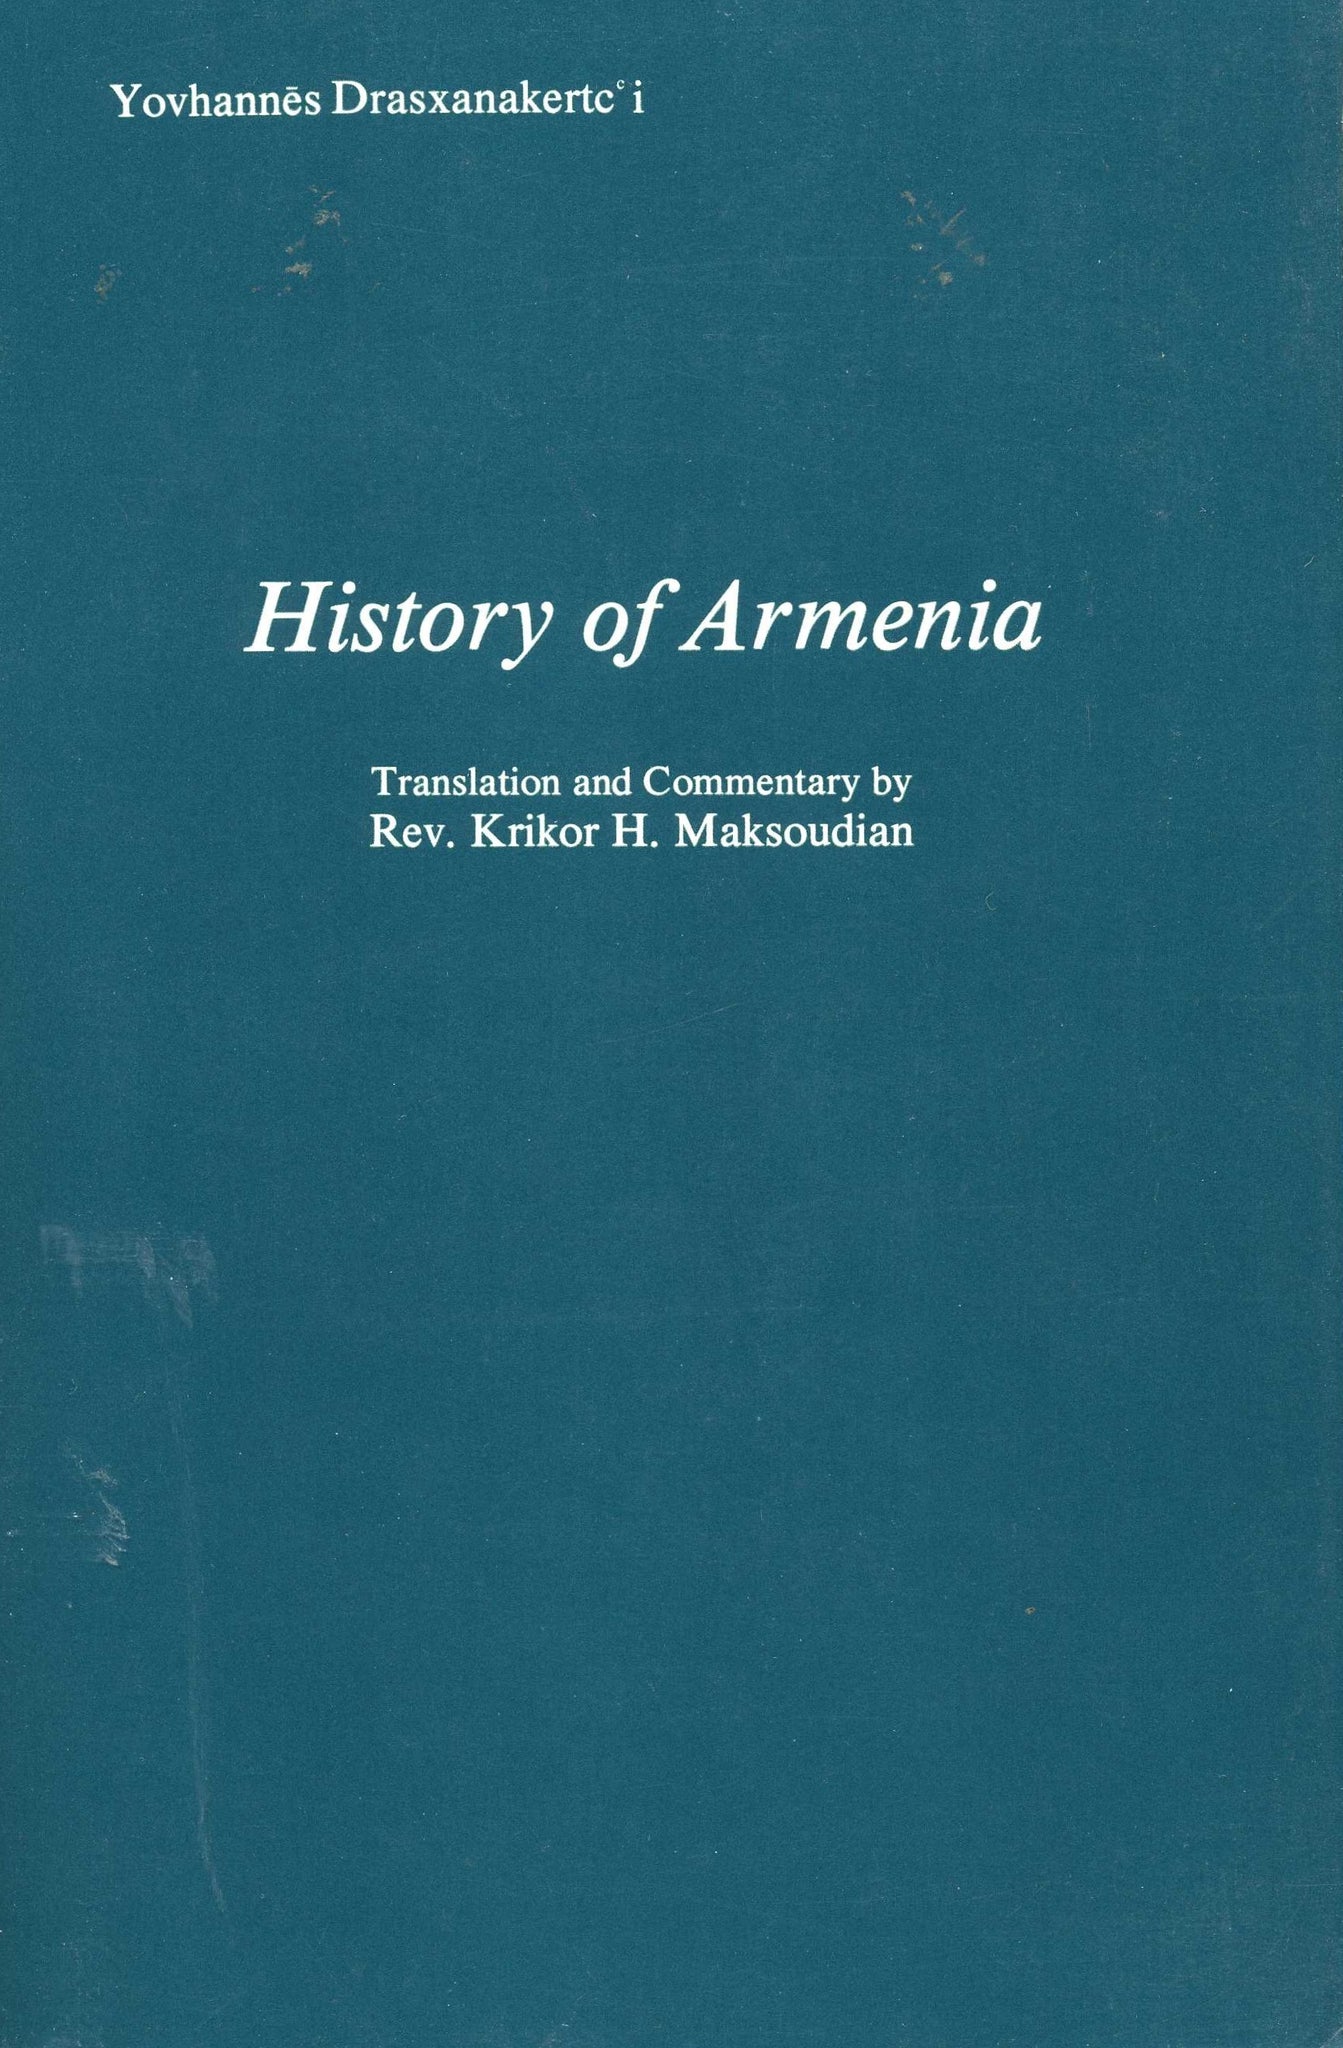 Yovhannes Drasxanakertc'i's HISTORY OF ARMENIA